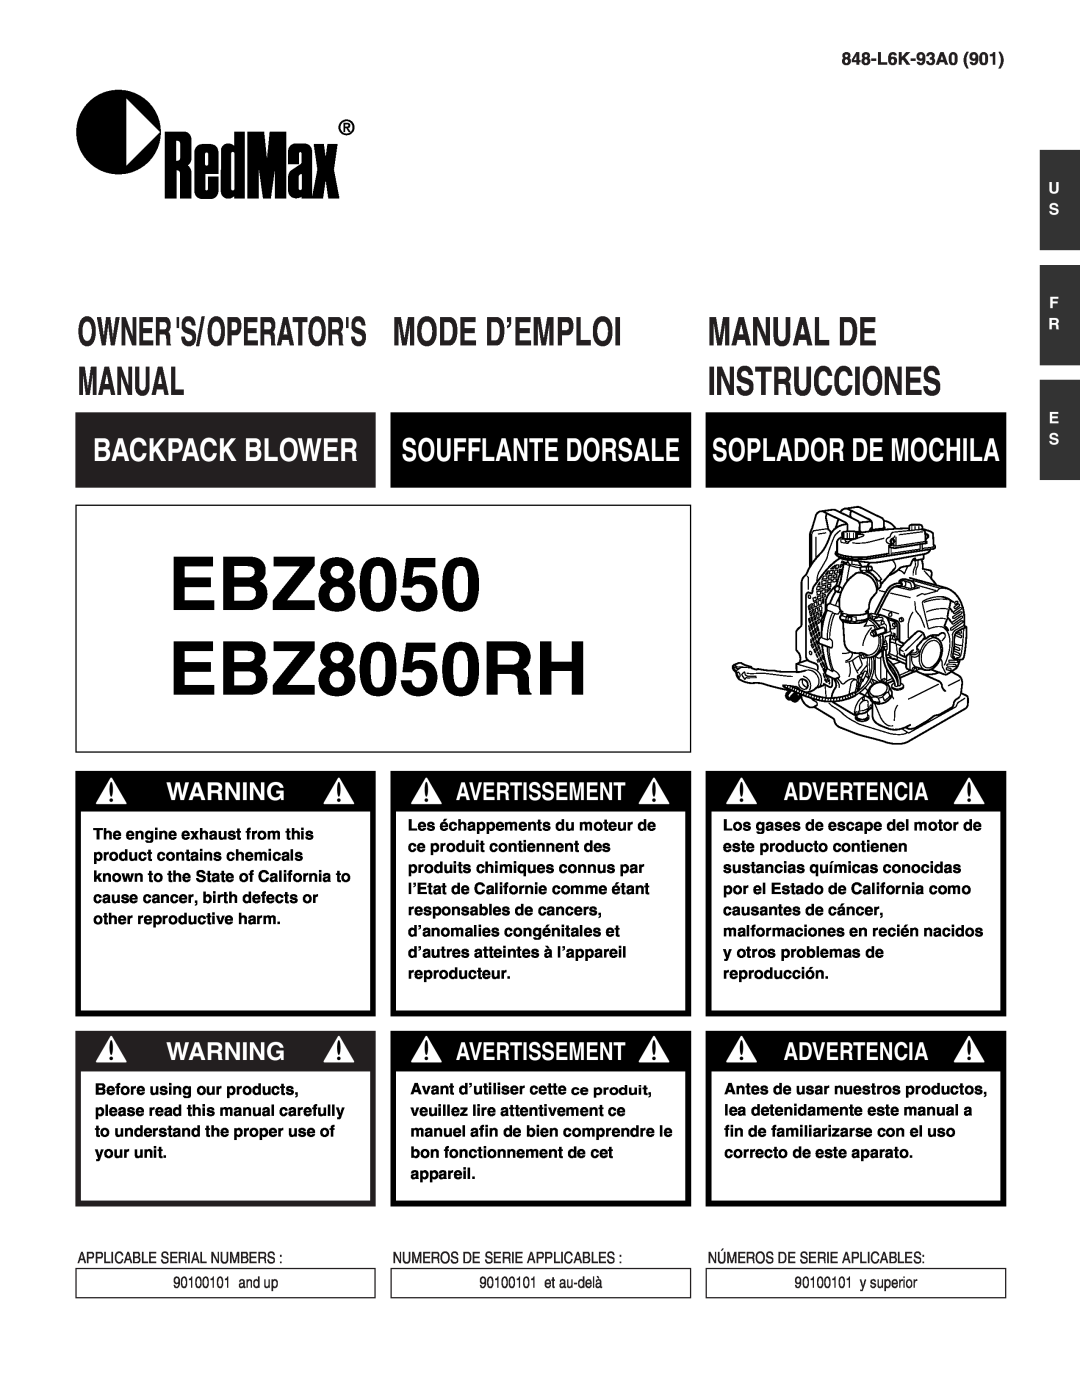 RedMax manual Owners/Operators, Avertissement, Advertencia, 848-L6K-93A0, U S F R E S, EBZ8050 EBZ8050RH, Manual De 